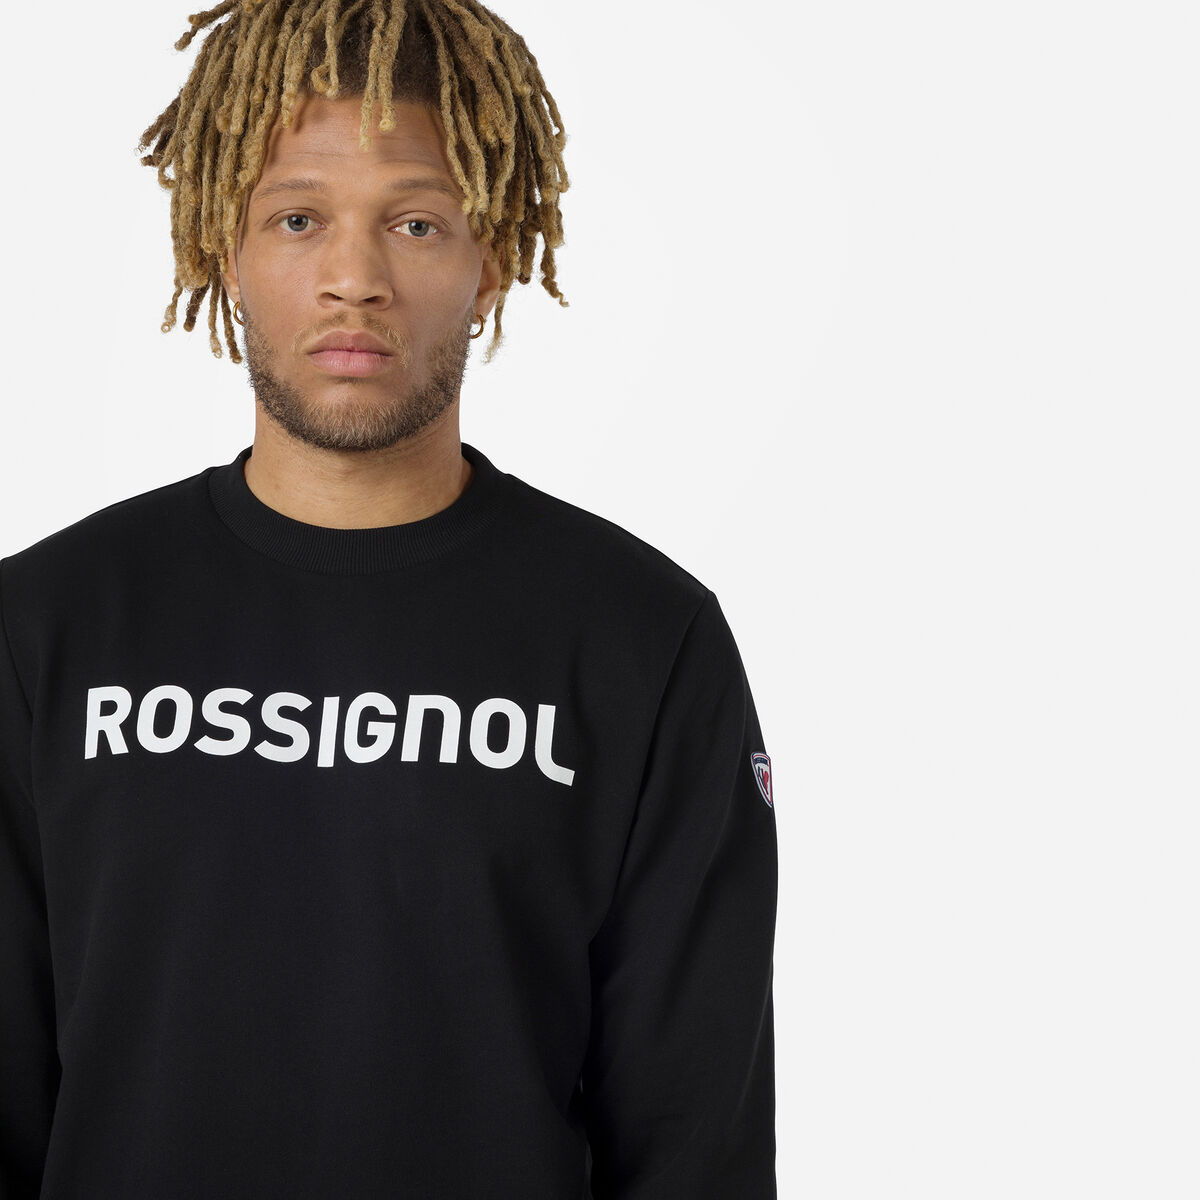 Rossignol Herrensweatshirt aus Baumwolle mit Logo und Rundhalsausschnitt black